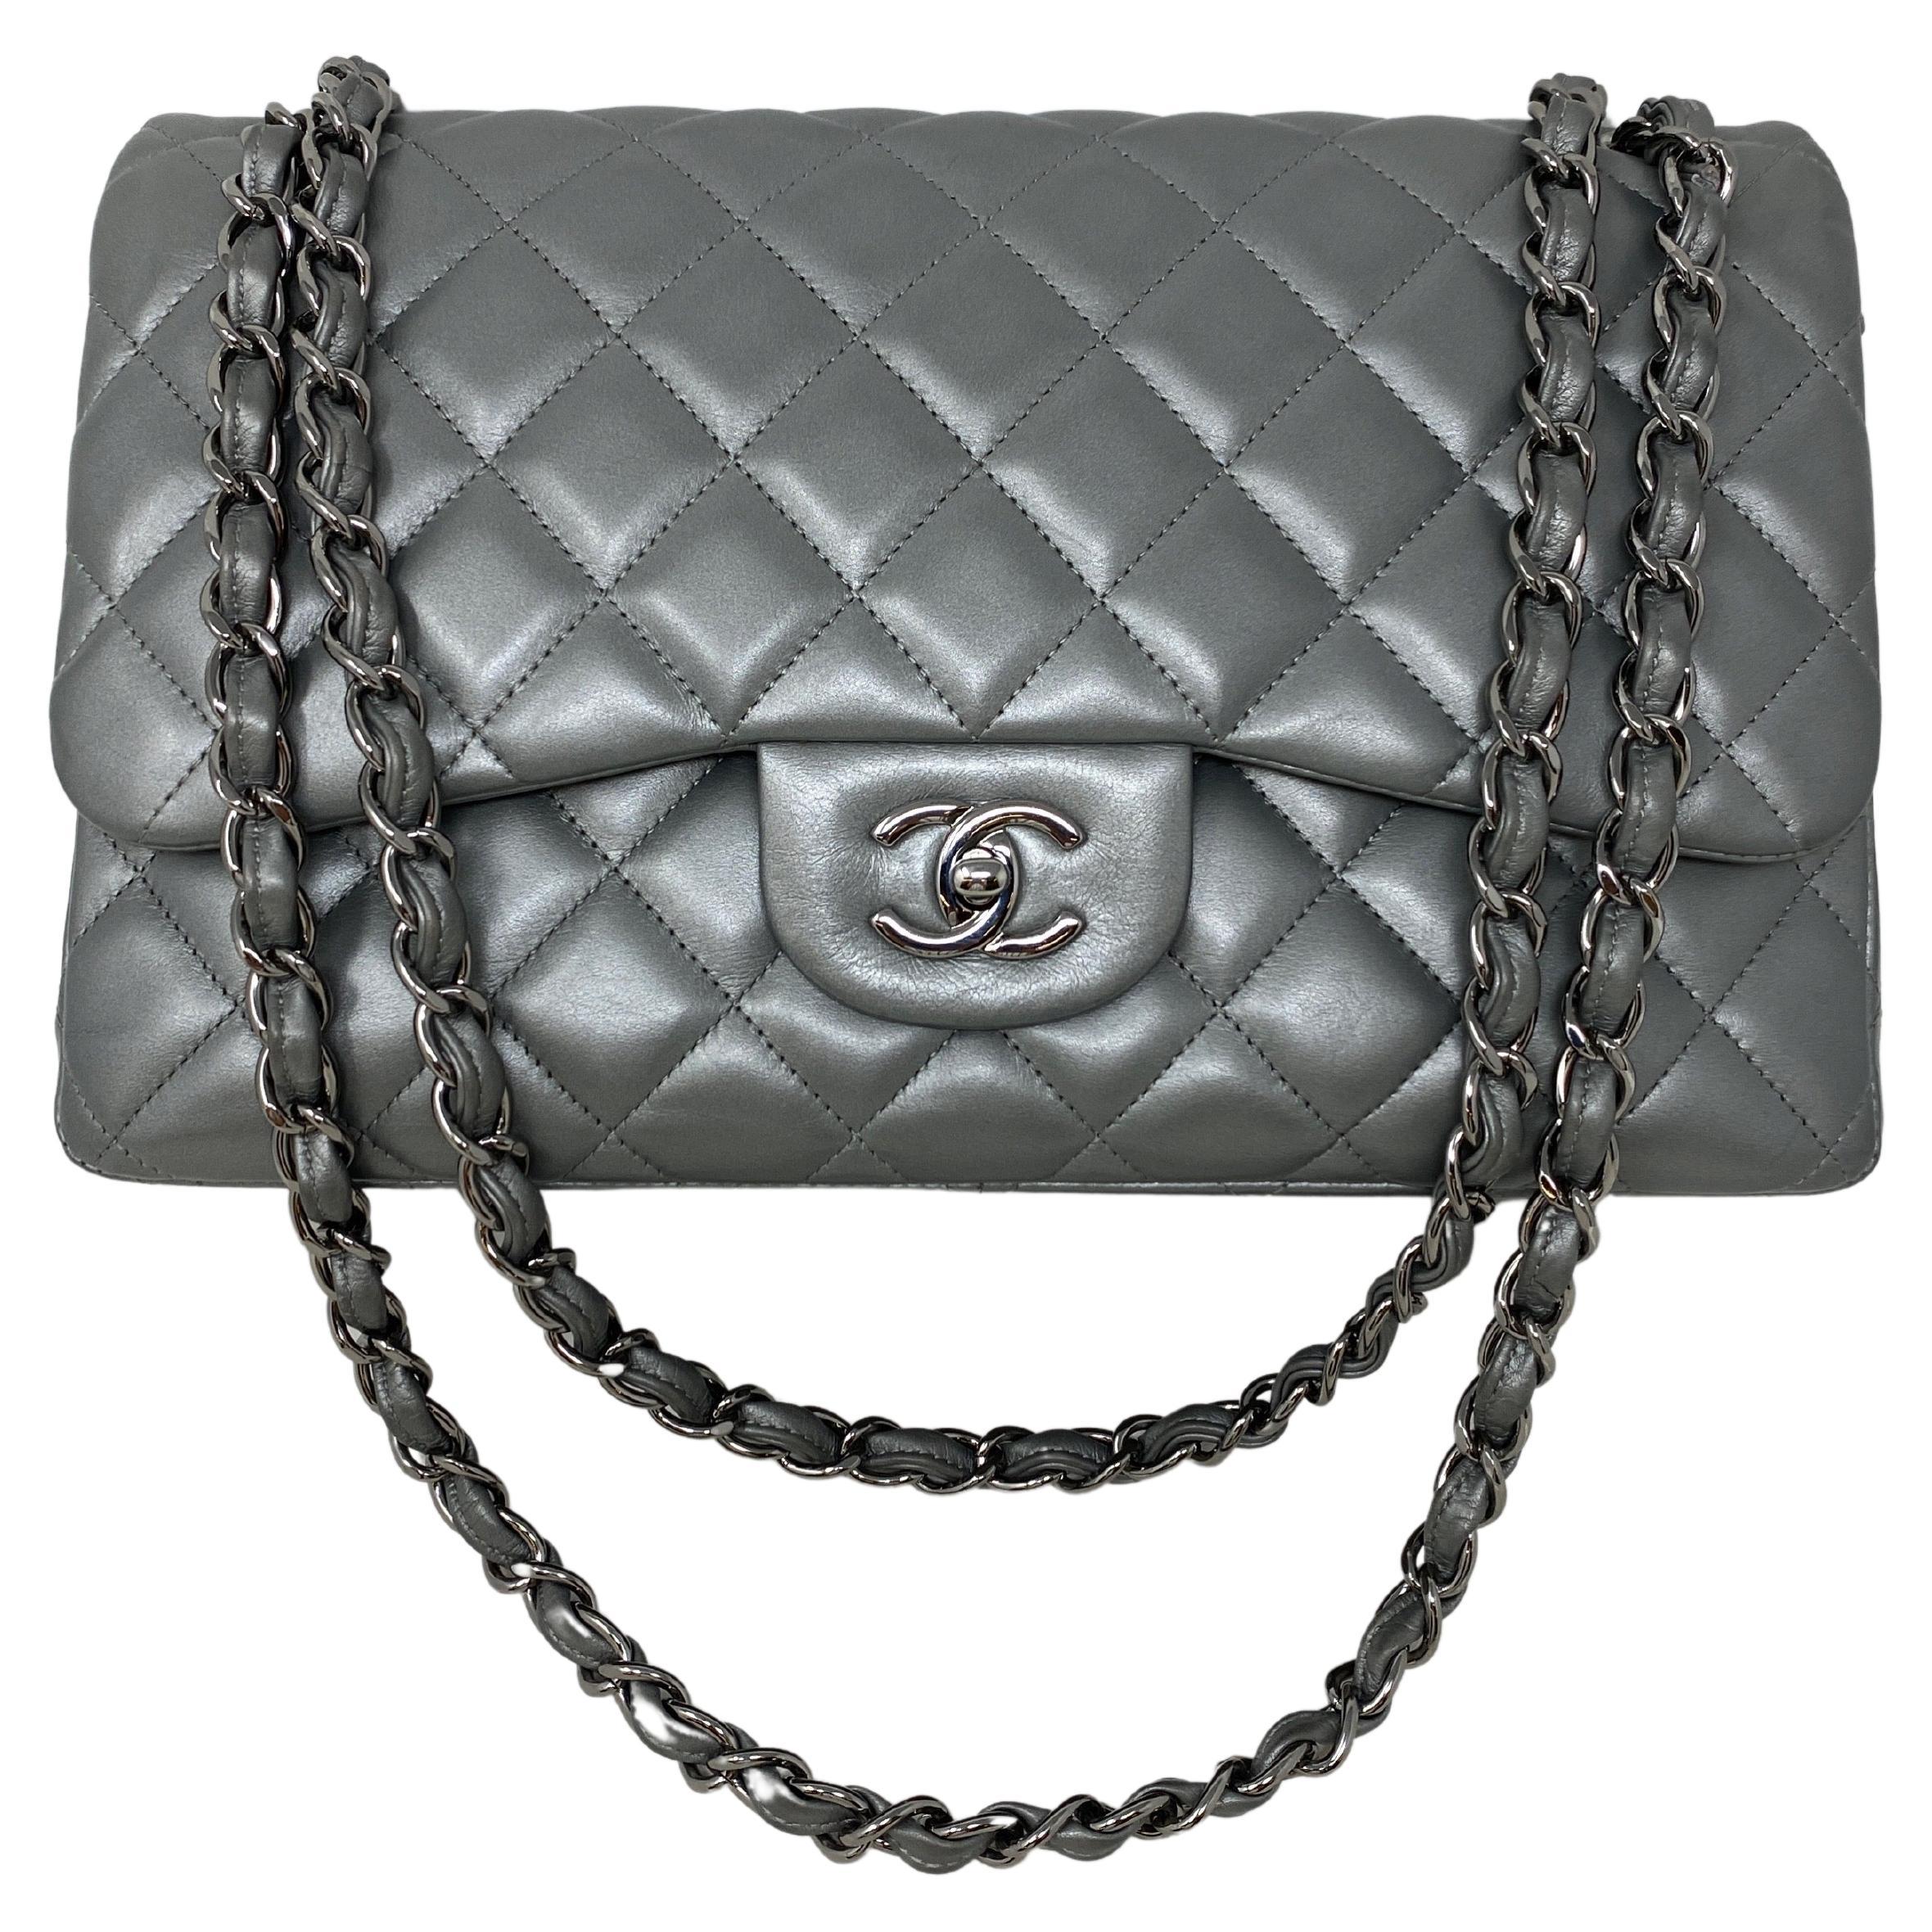 Chanel Silver Metallic Jumbo Bag 